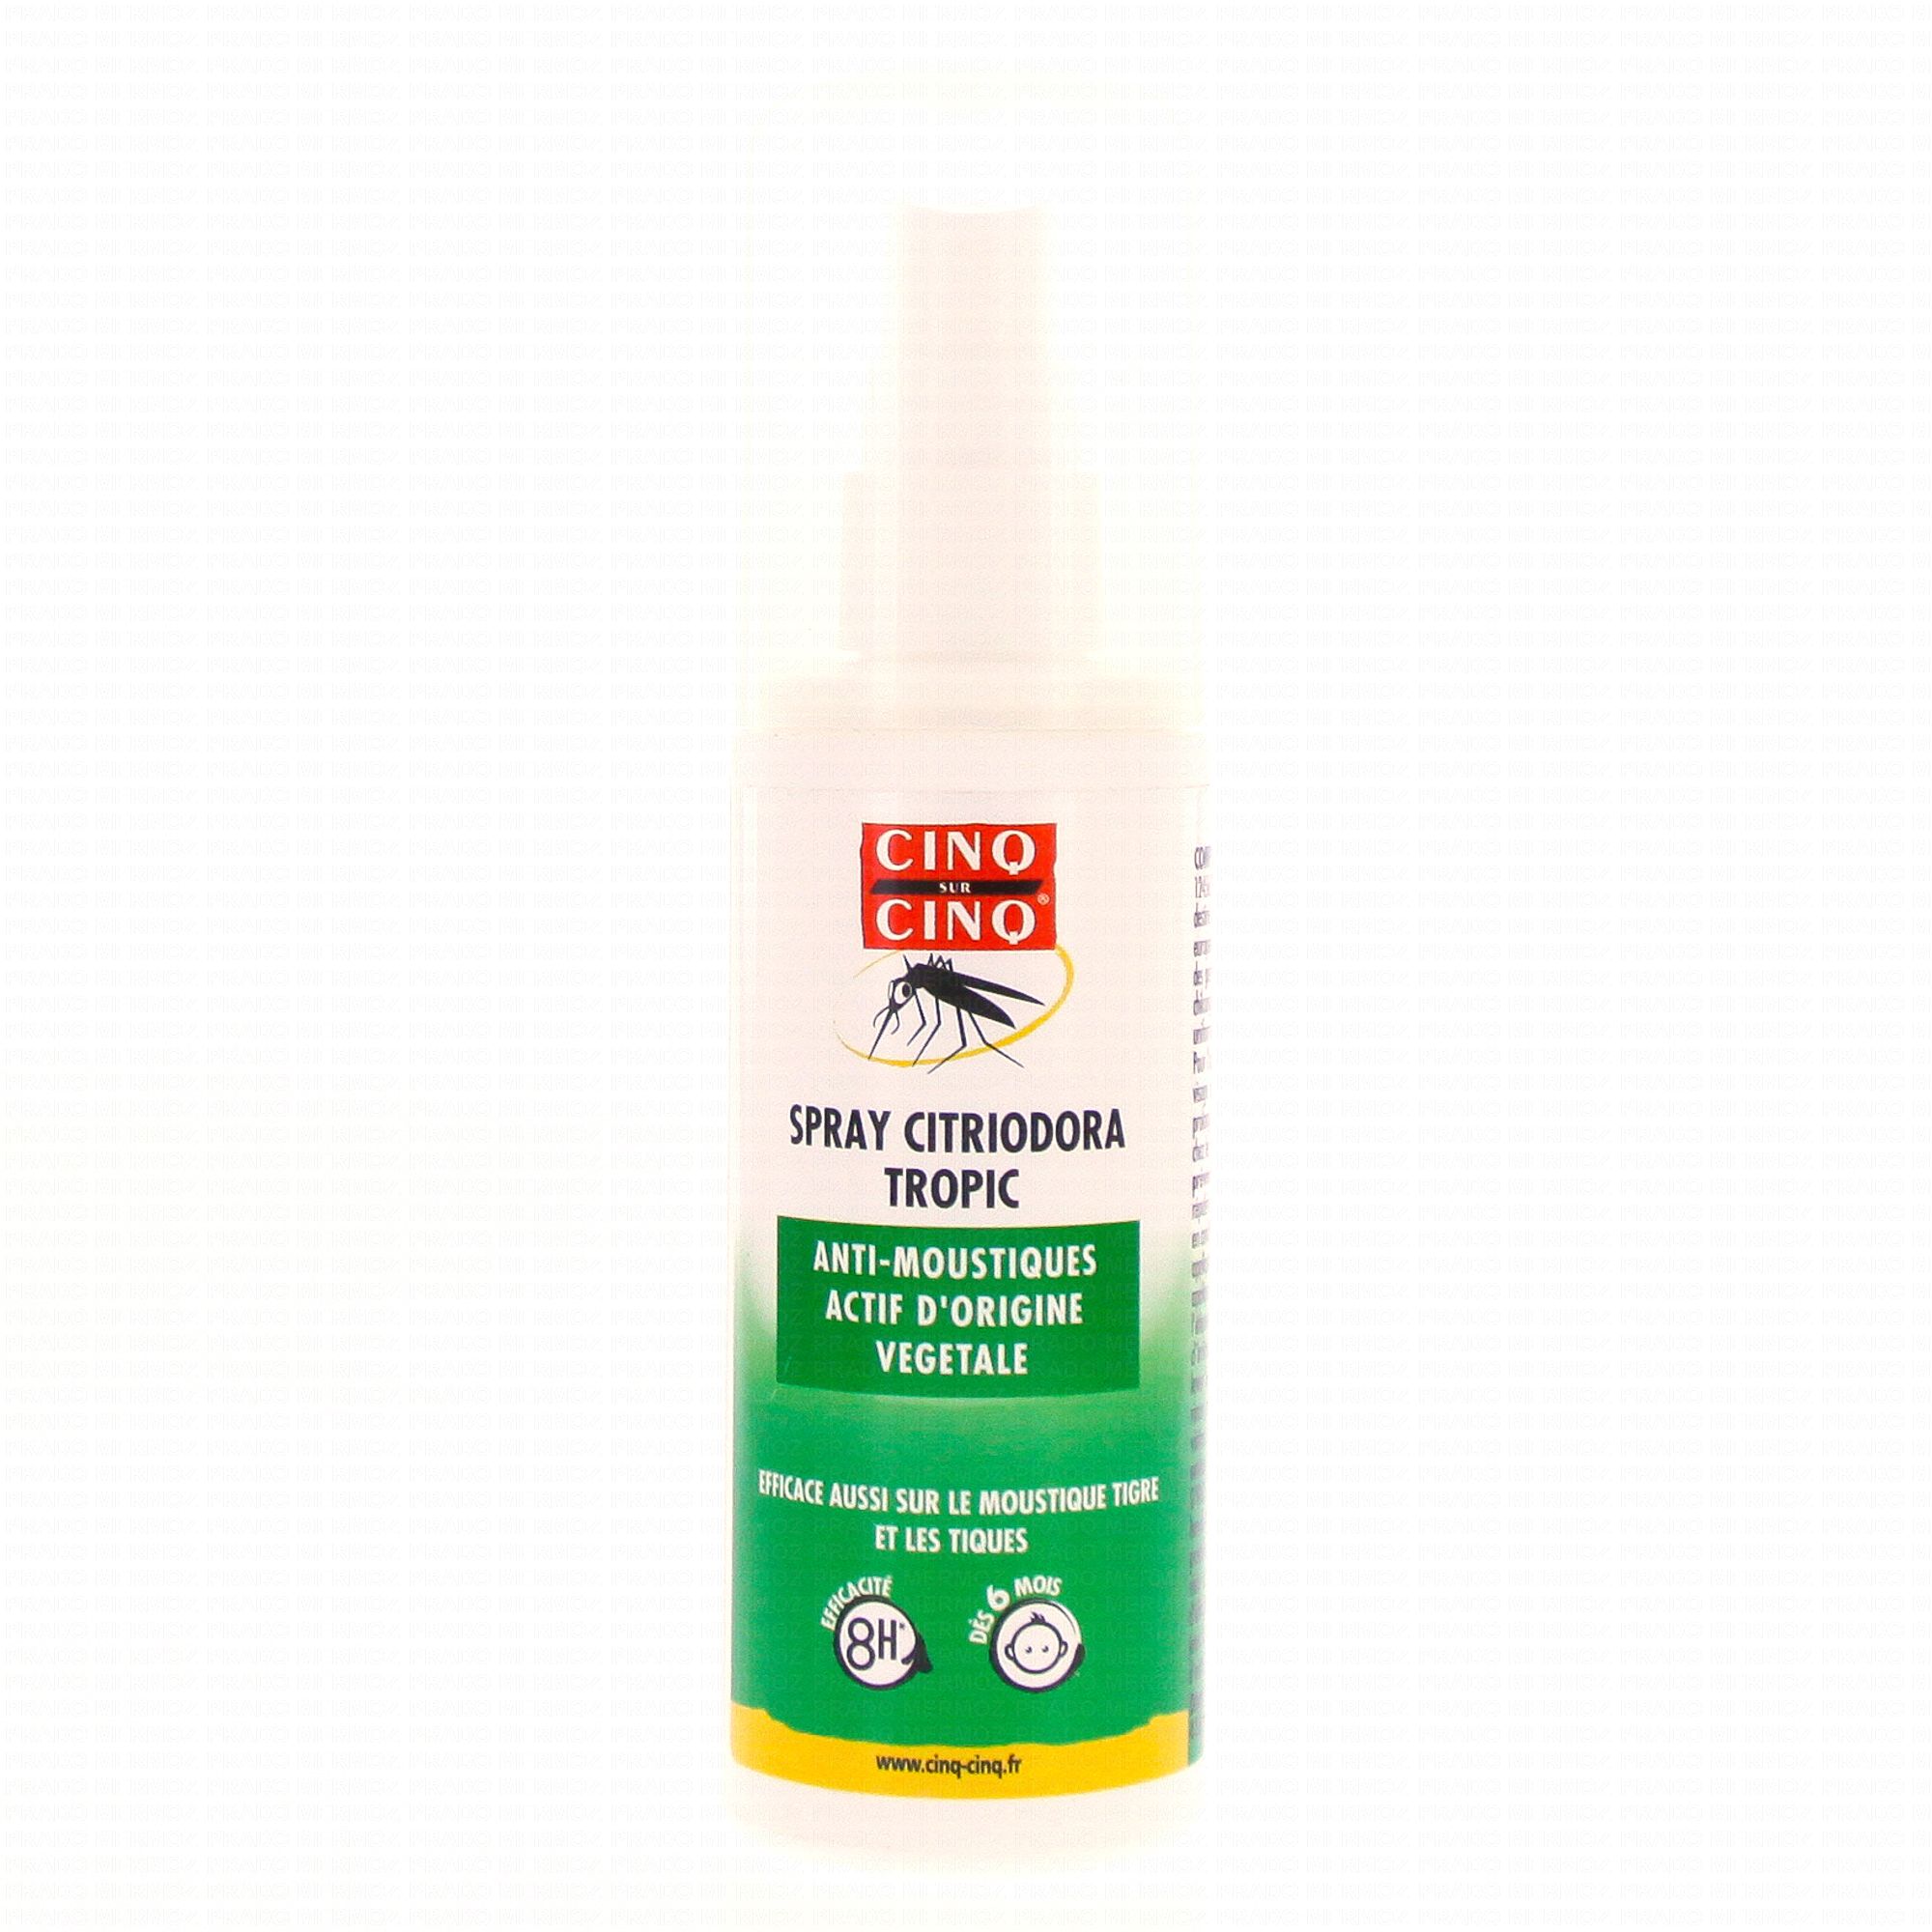 CINQ SUR CINQ Spray anti-moustiques 100ml